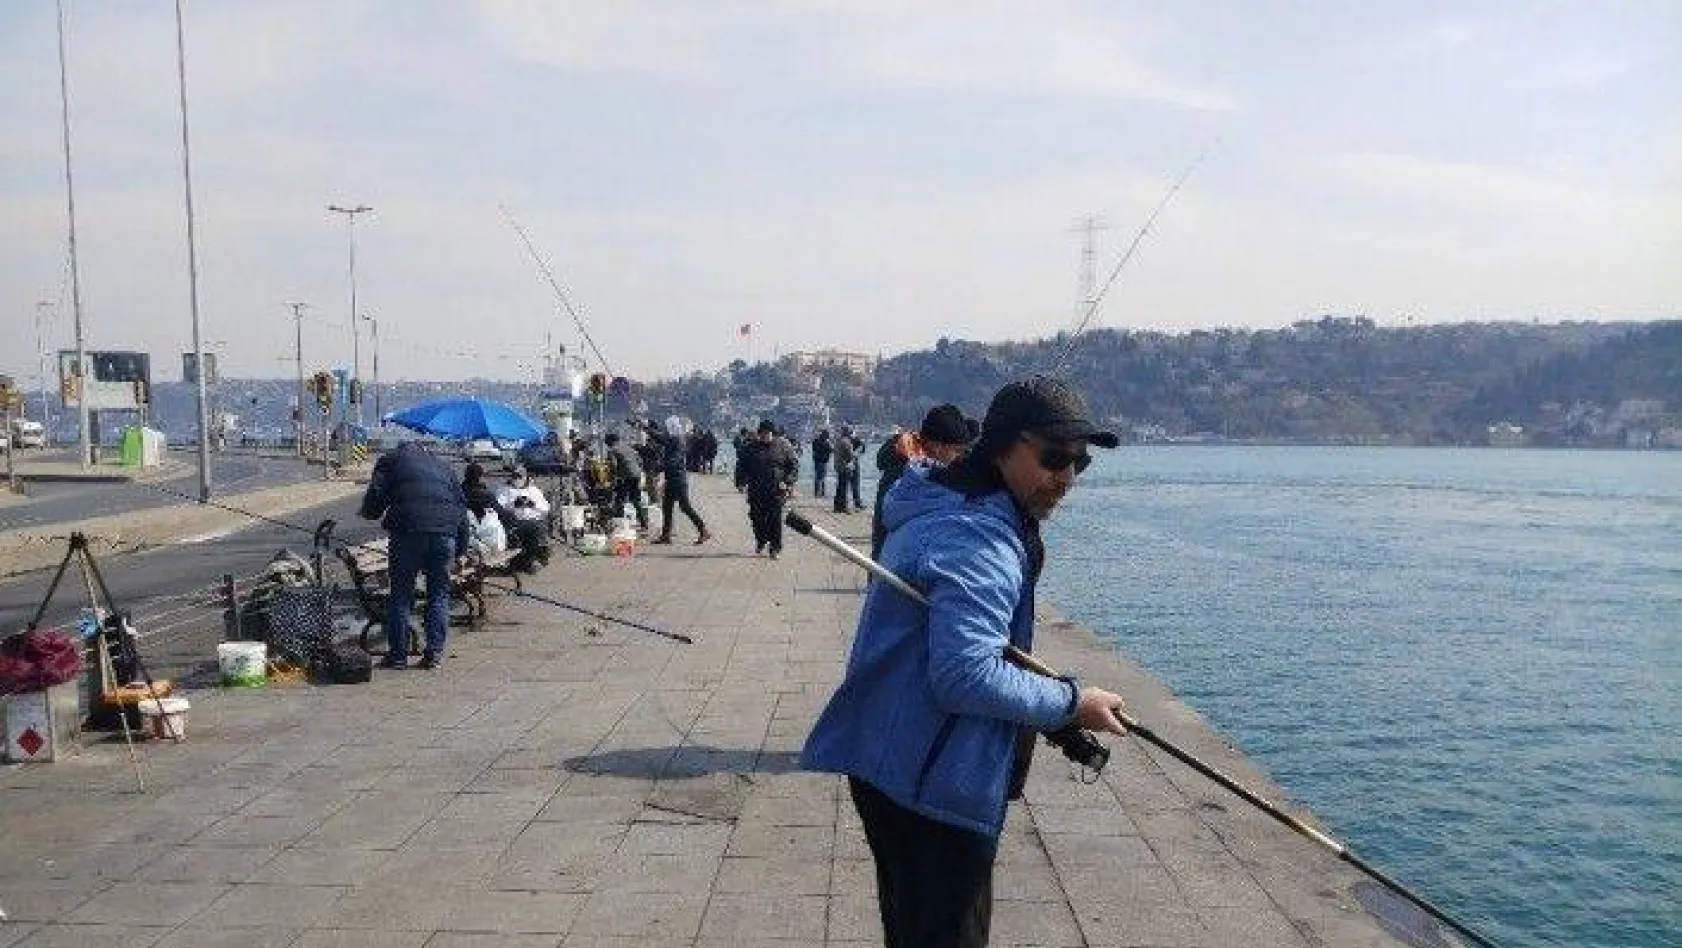 Balıkçılar öğle saatlerinde Arnavutköy sahiline akın etti